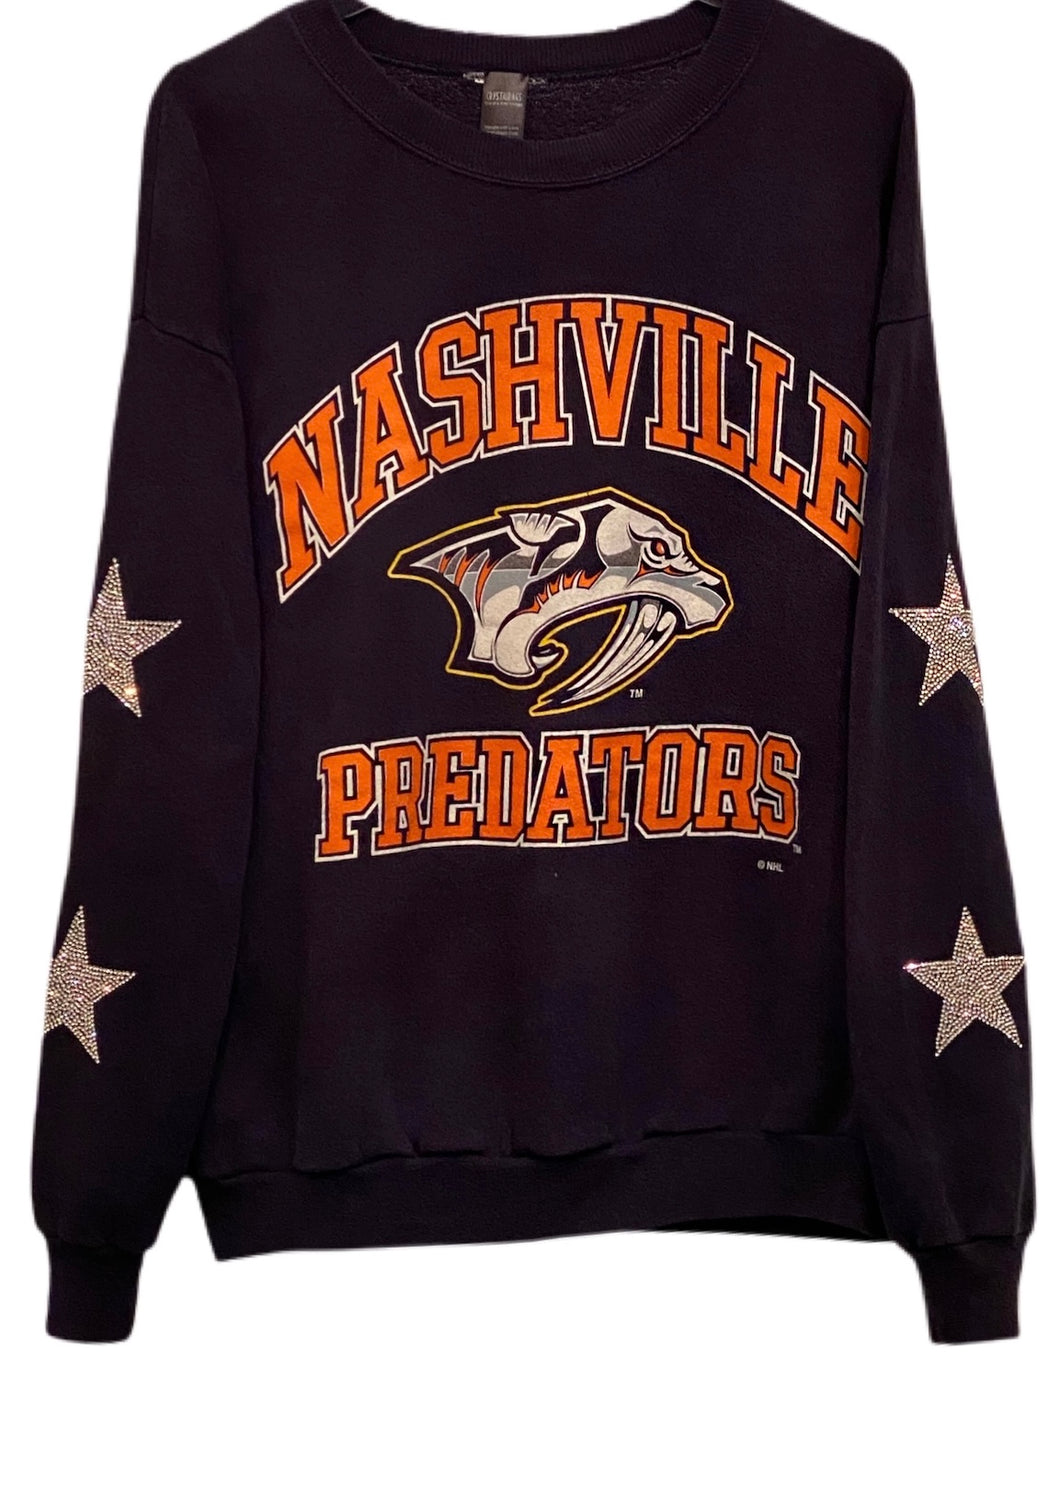 Nashville Predators, NHL One of a KIND Vintage Sweatshirt with Crystal Star Design